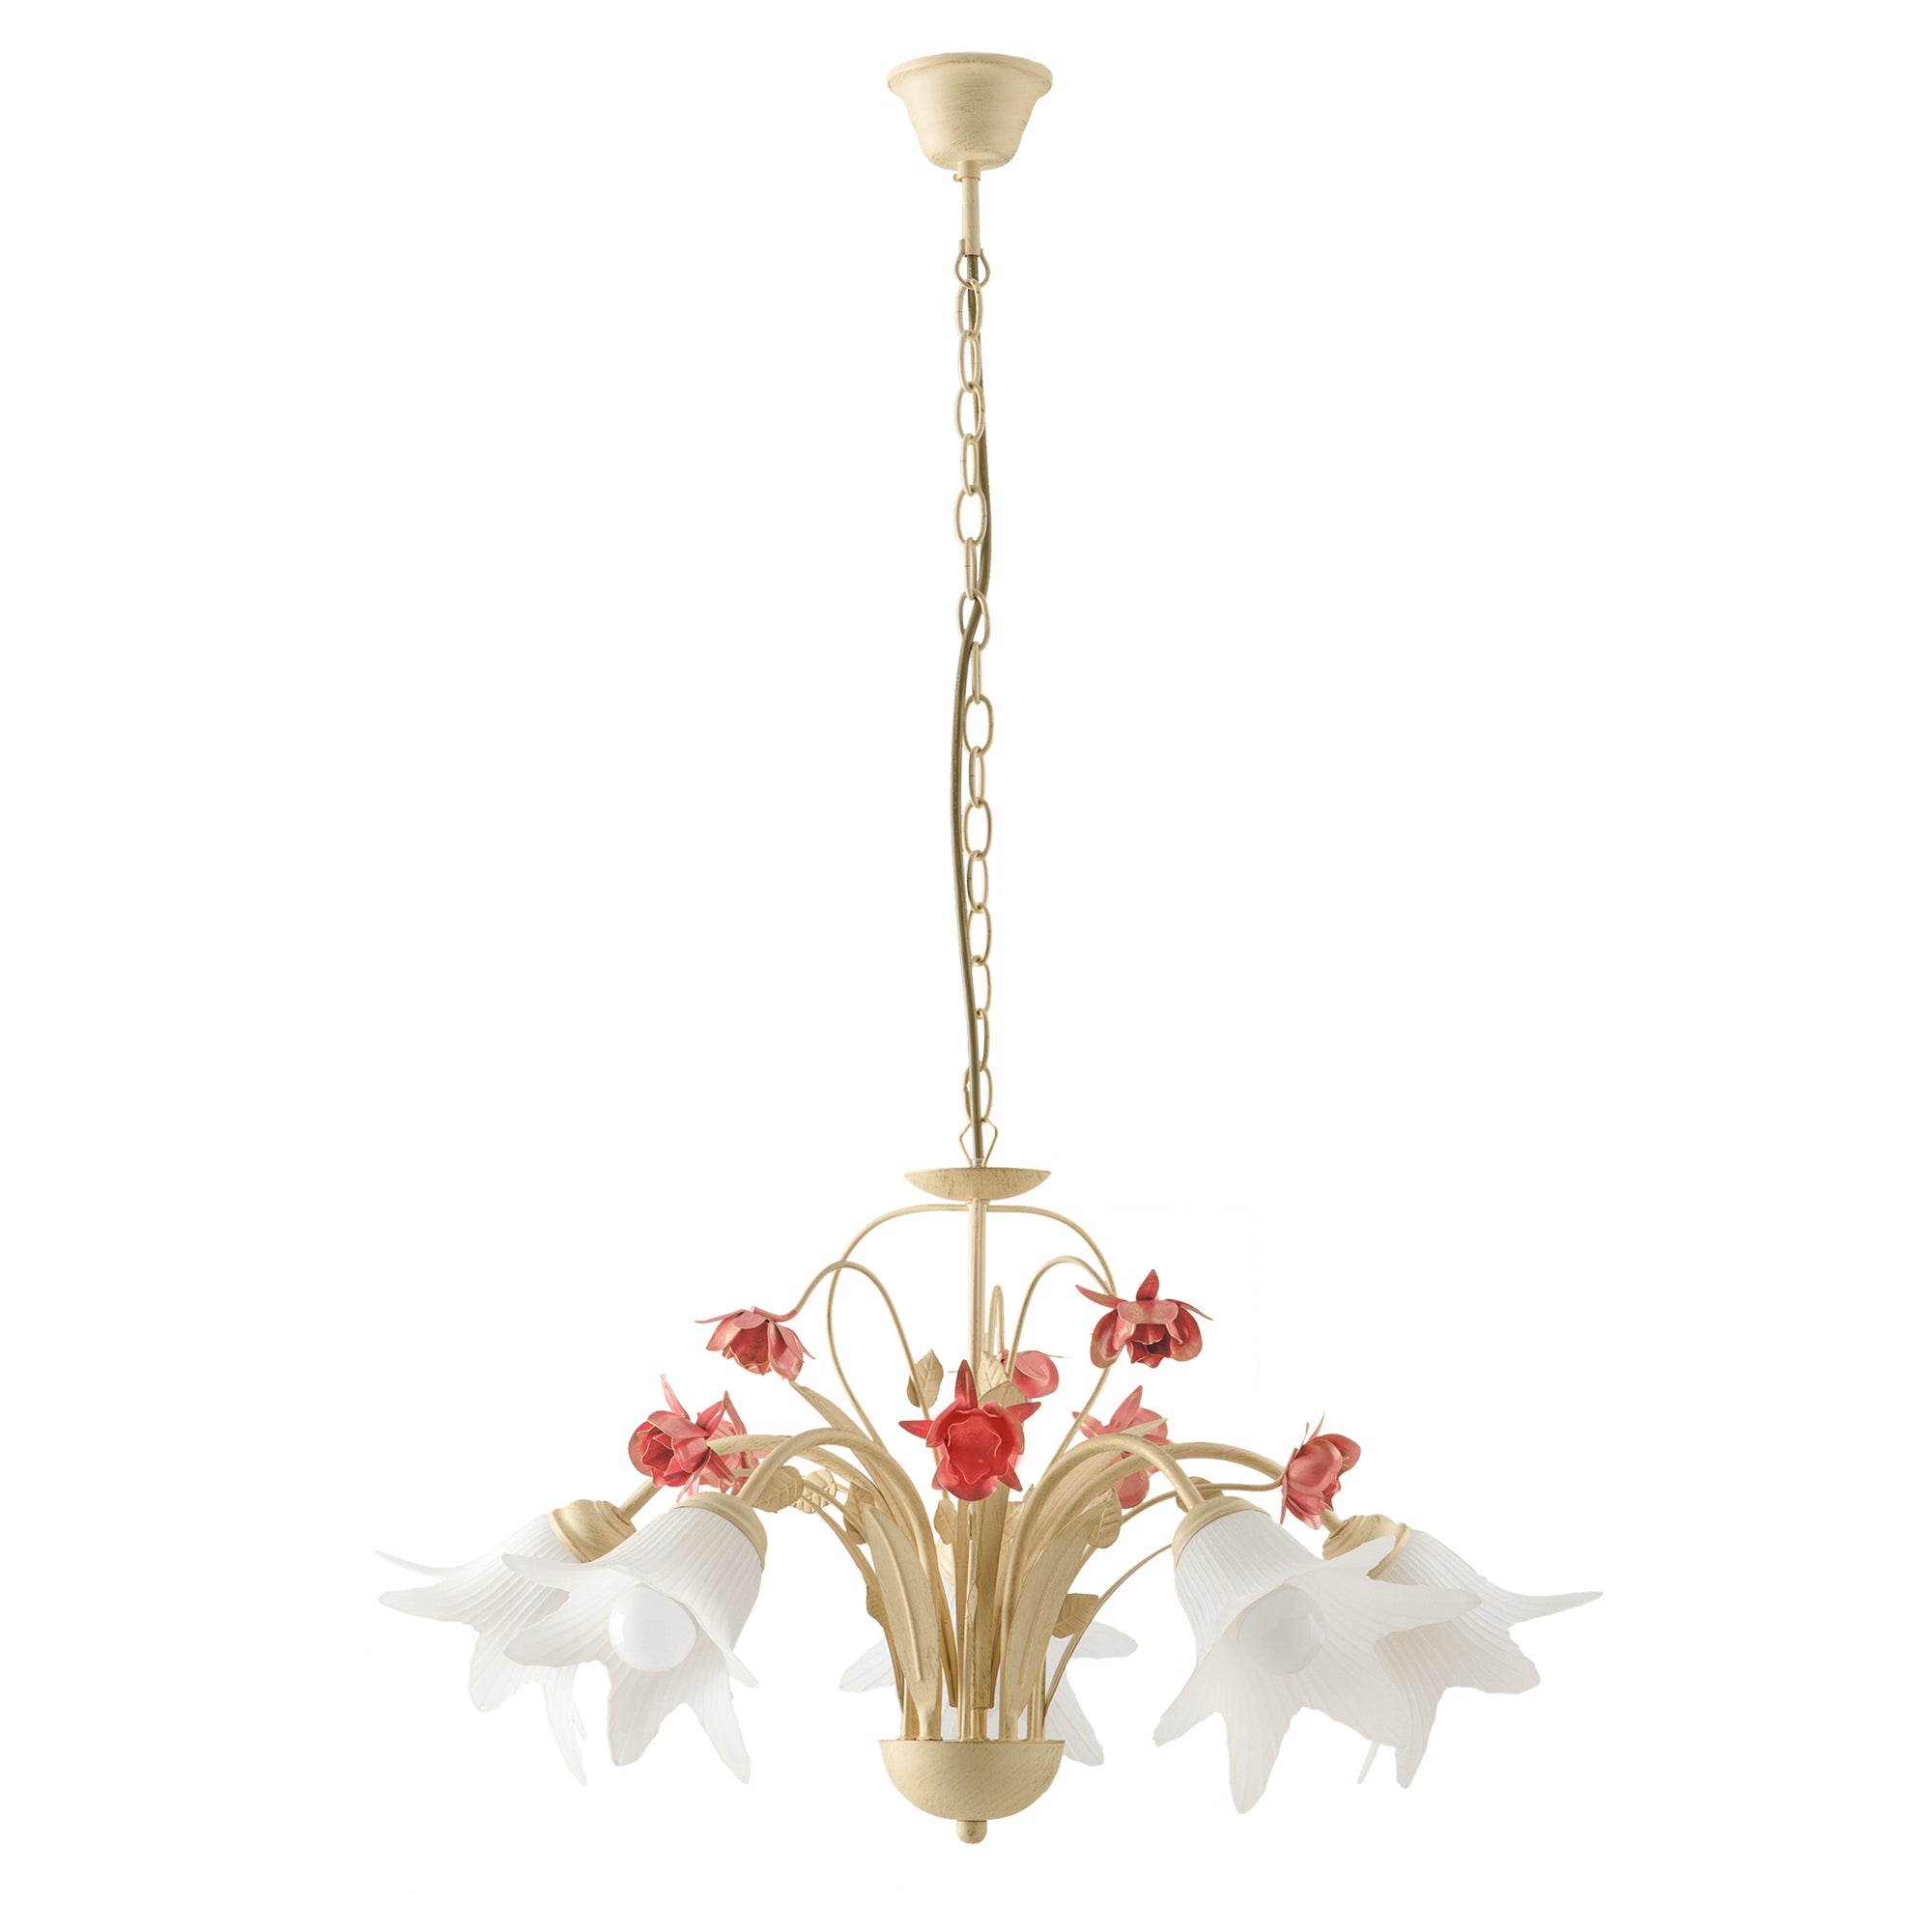 Lampadario a sospensione ROSE in metallo decorato a mano con dettagli floreali, e diffusore in vetro